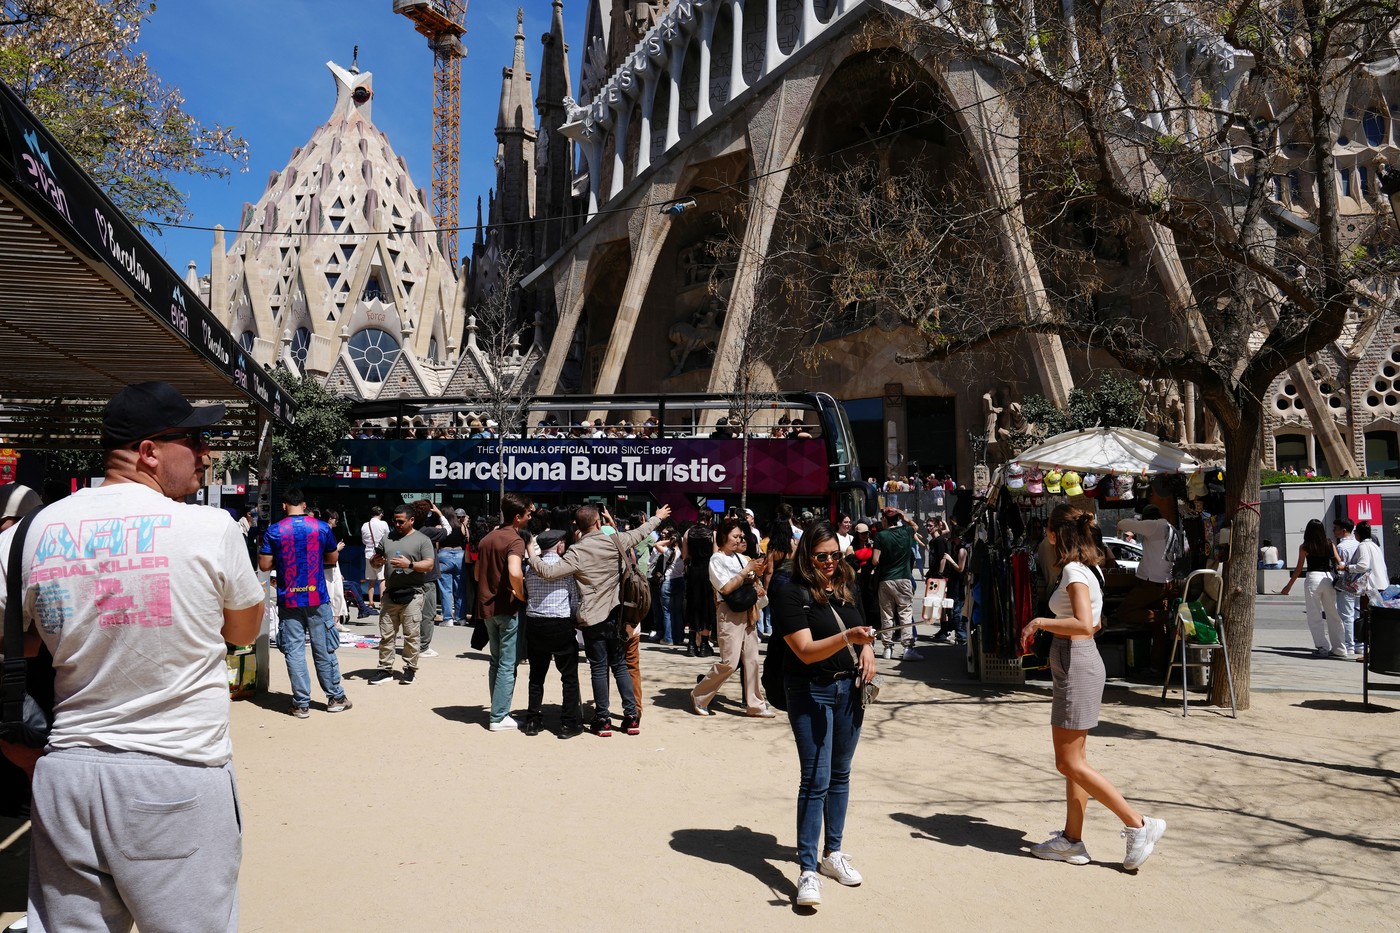 Spaniolii nu mai fac fata supraturismului. Numarul turistilor straini, aproape dublu fata de populatia Spaniei